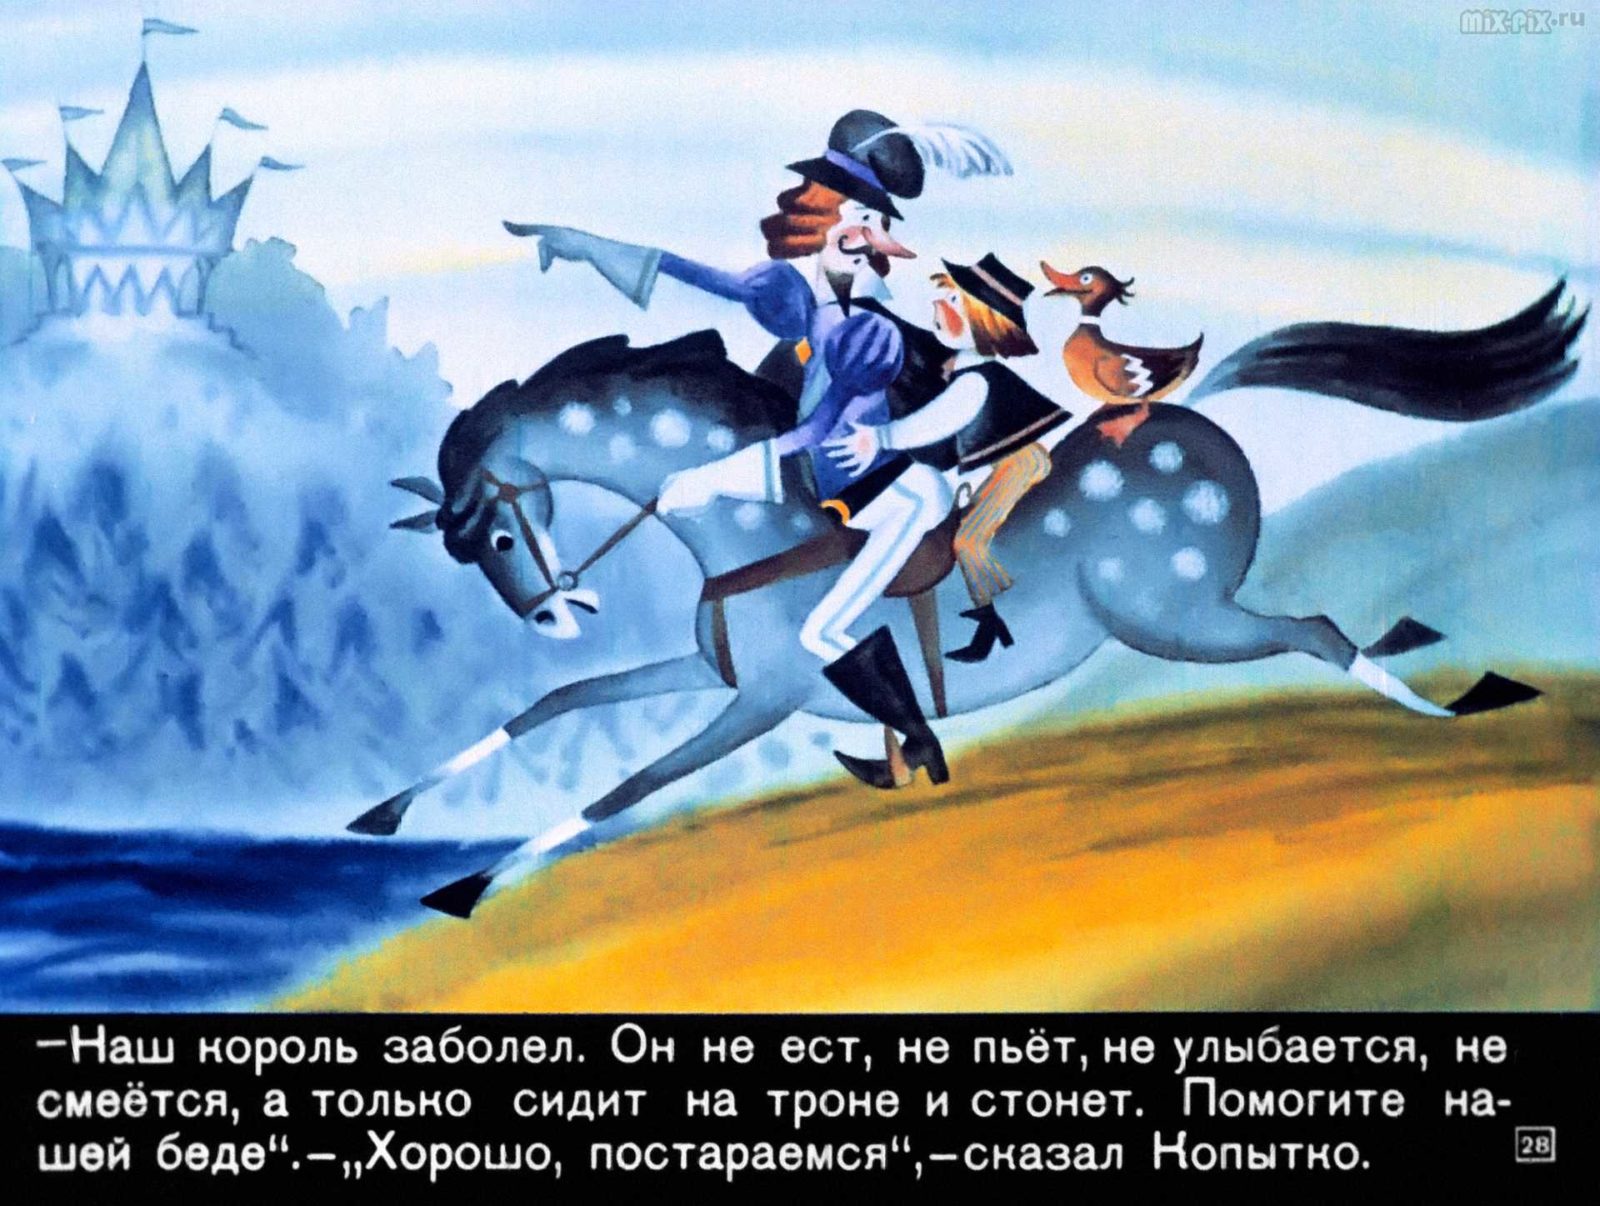 Сапожник Копытко и утка Кря (1972) 36